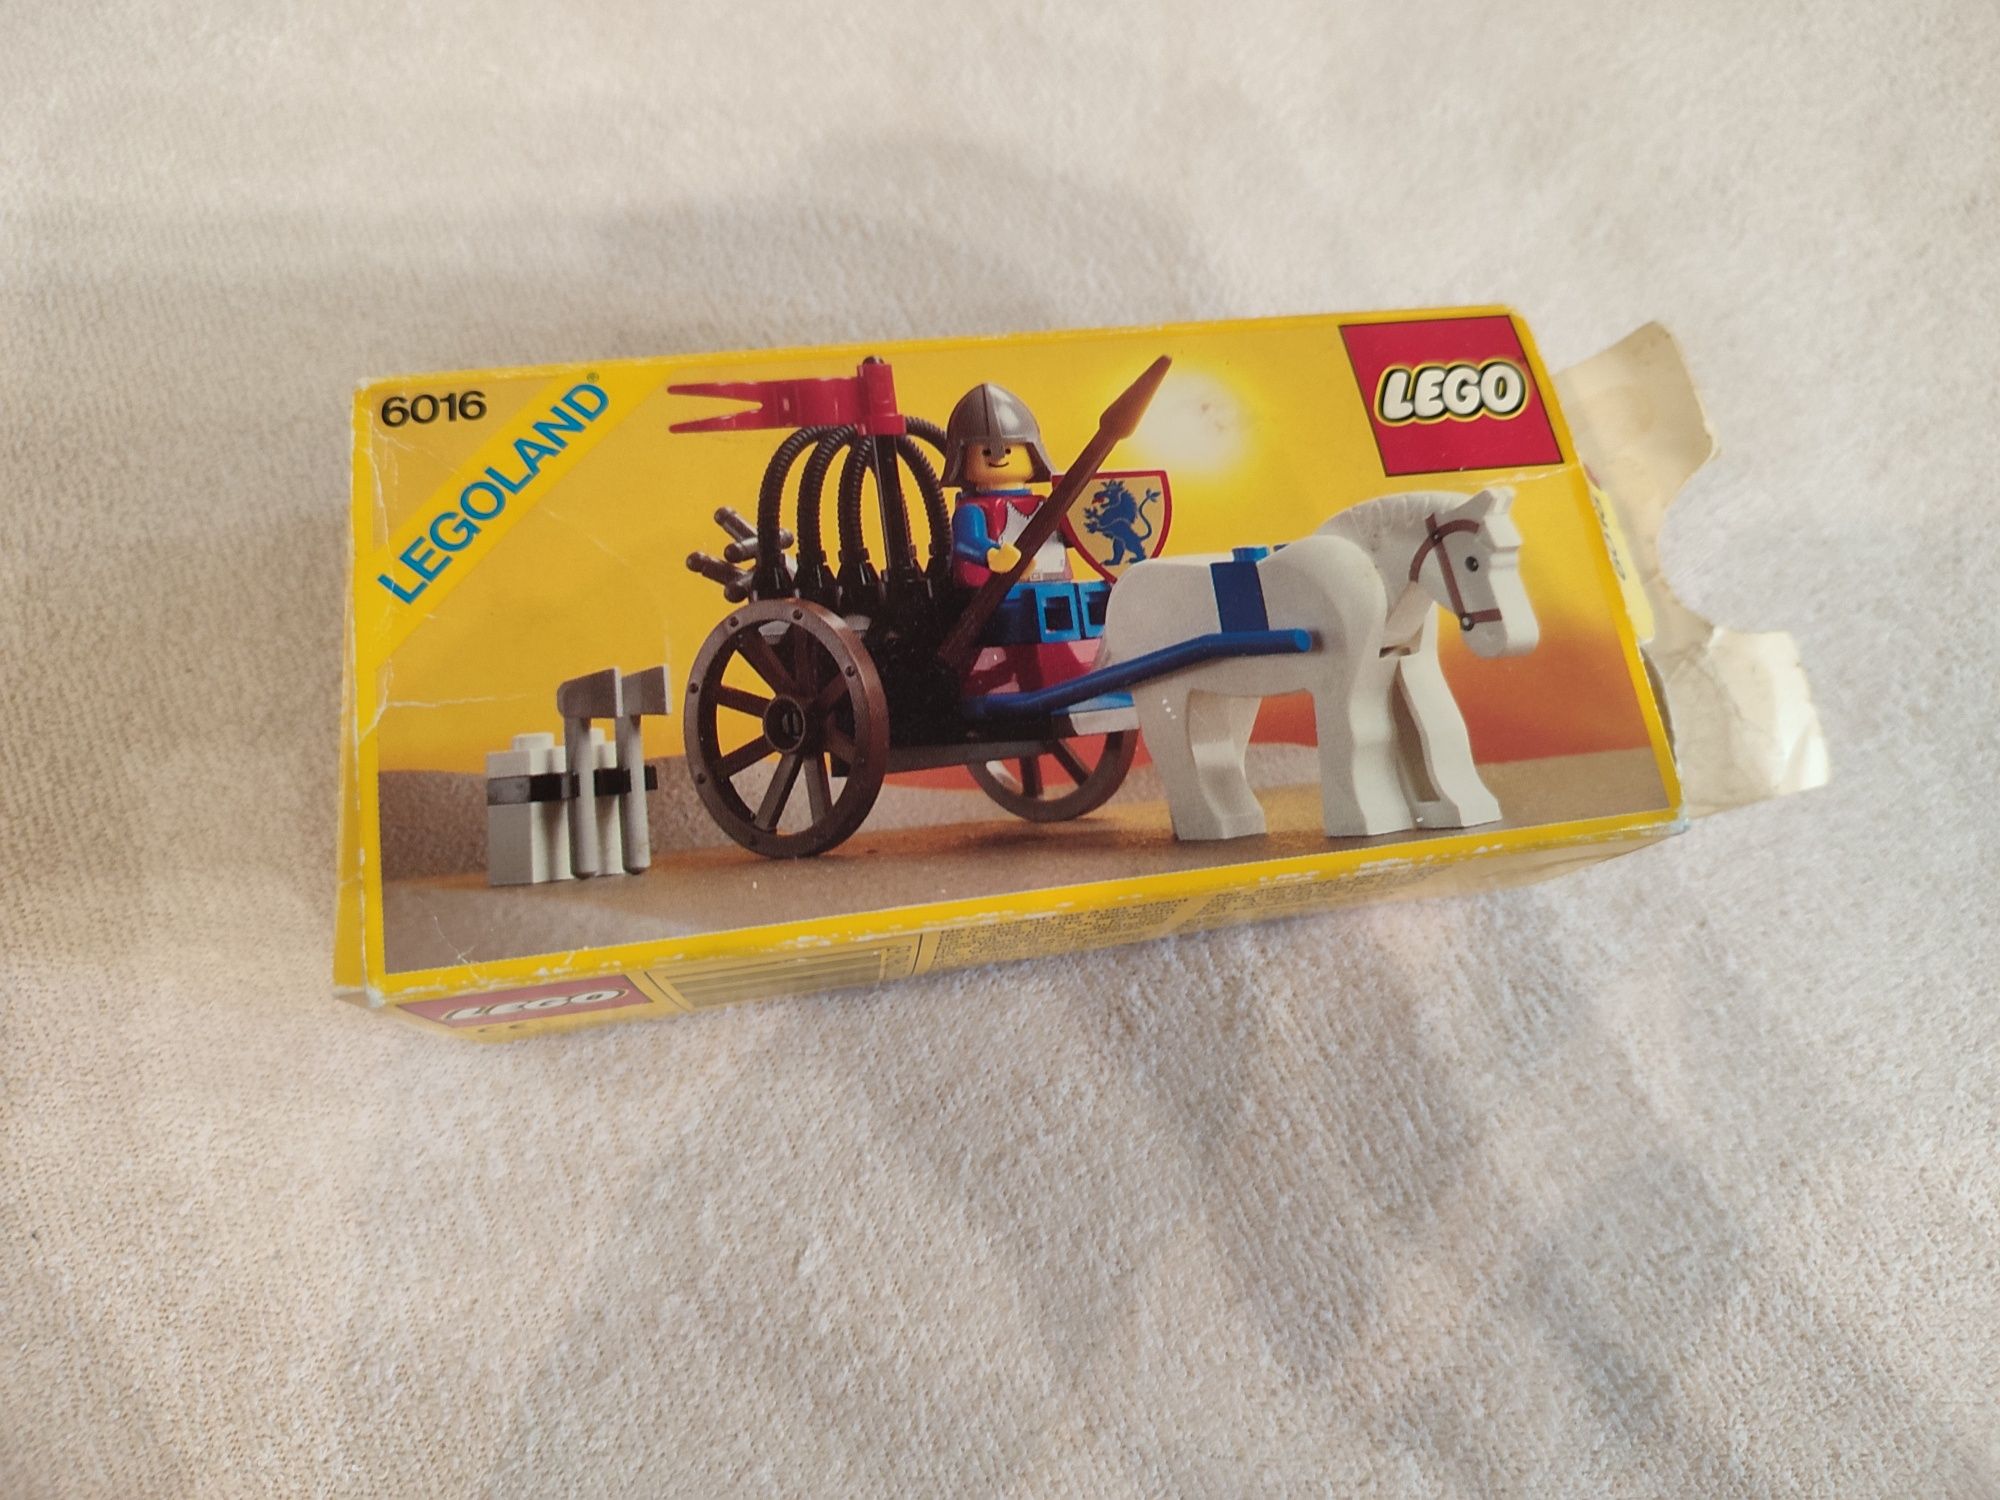 Lego 6016 castle zamek